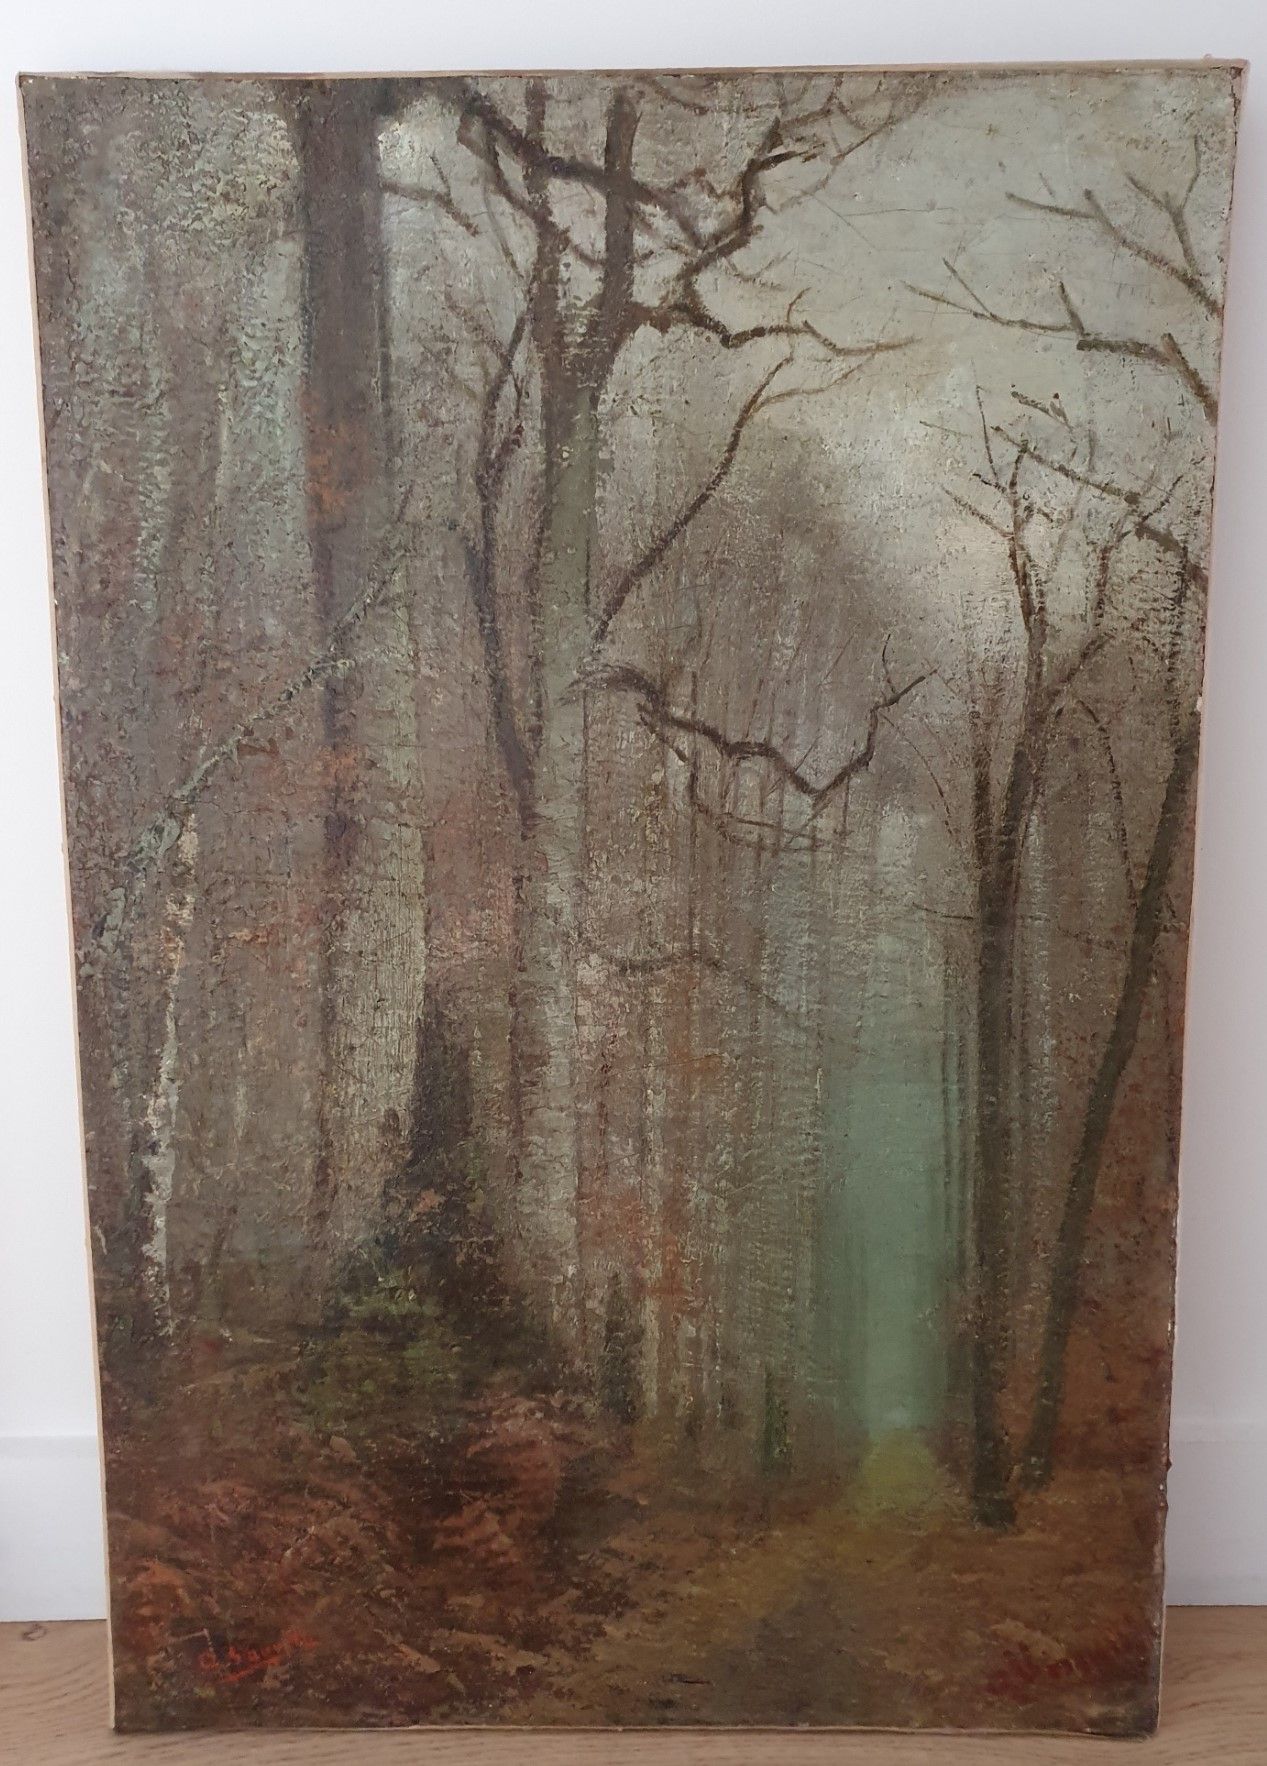 A. SAUVELLE A.绍韦勒

19世纪末/20世纪初的法国学校

"查看一个灌木丛"。

布面油画，左下角签名，83 x 56厘米。